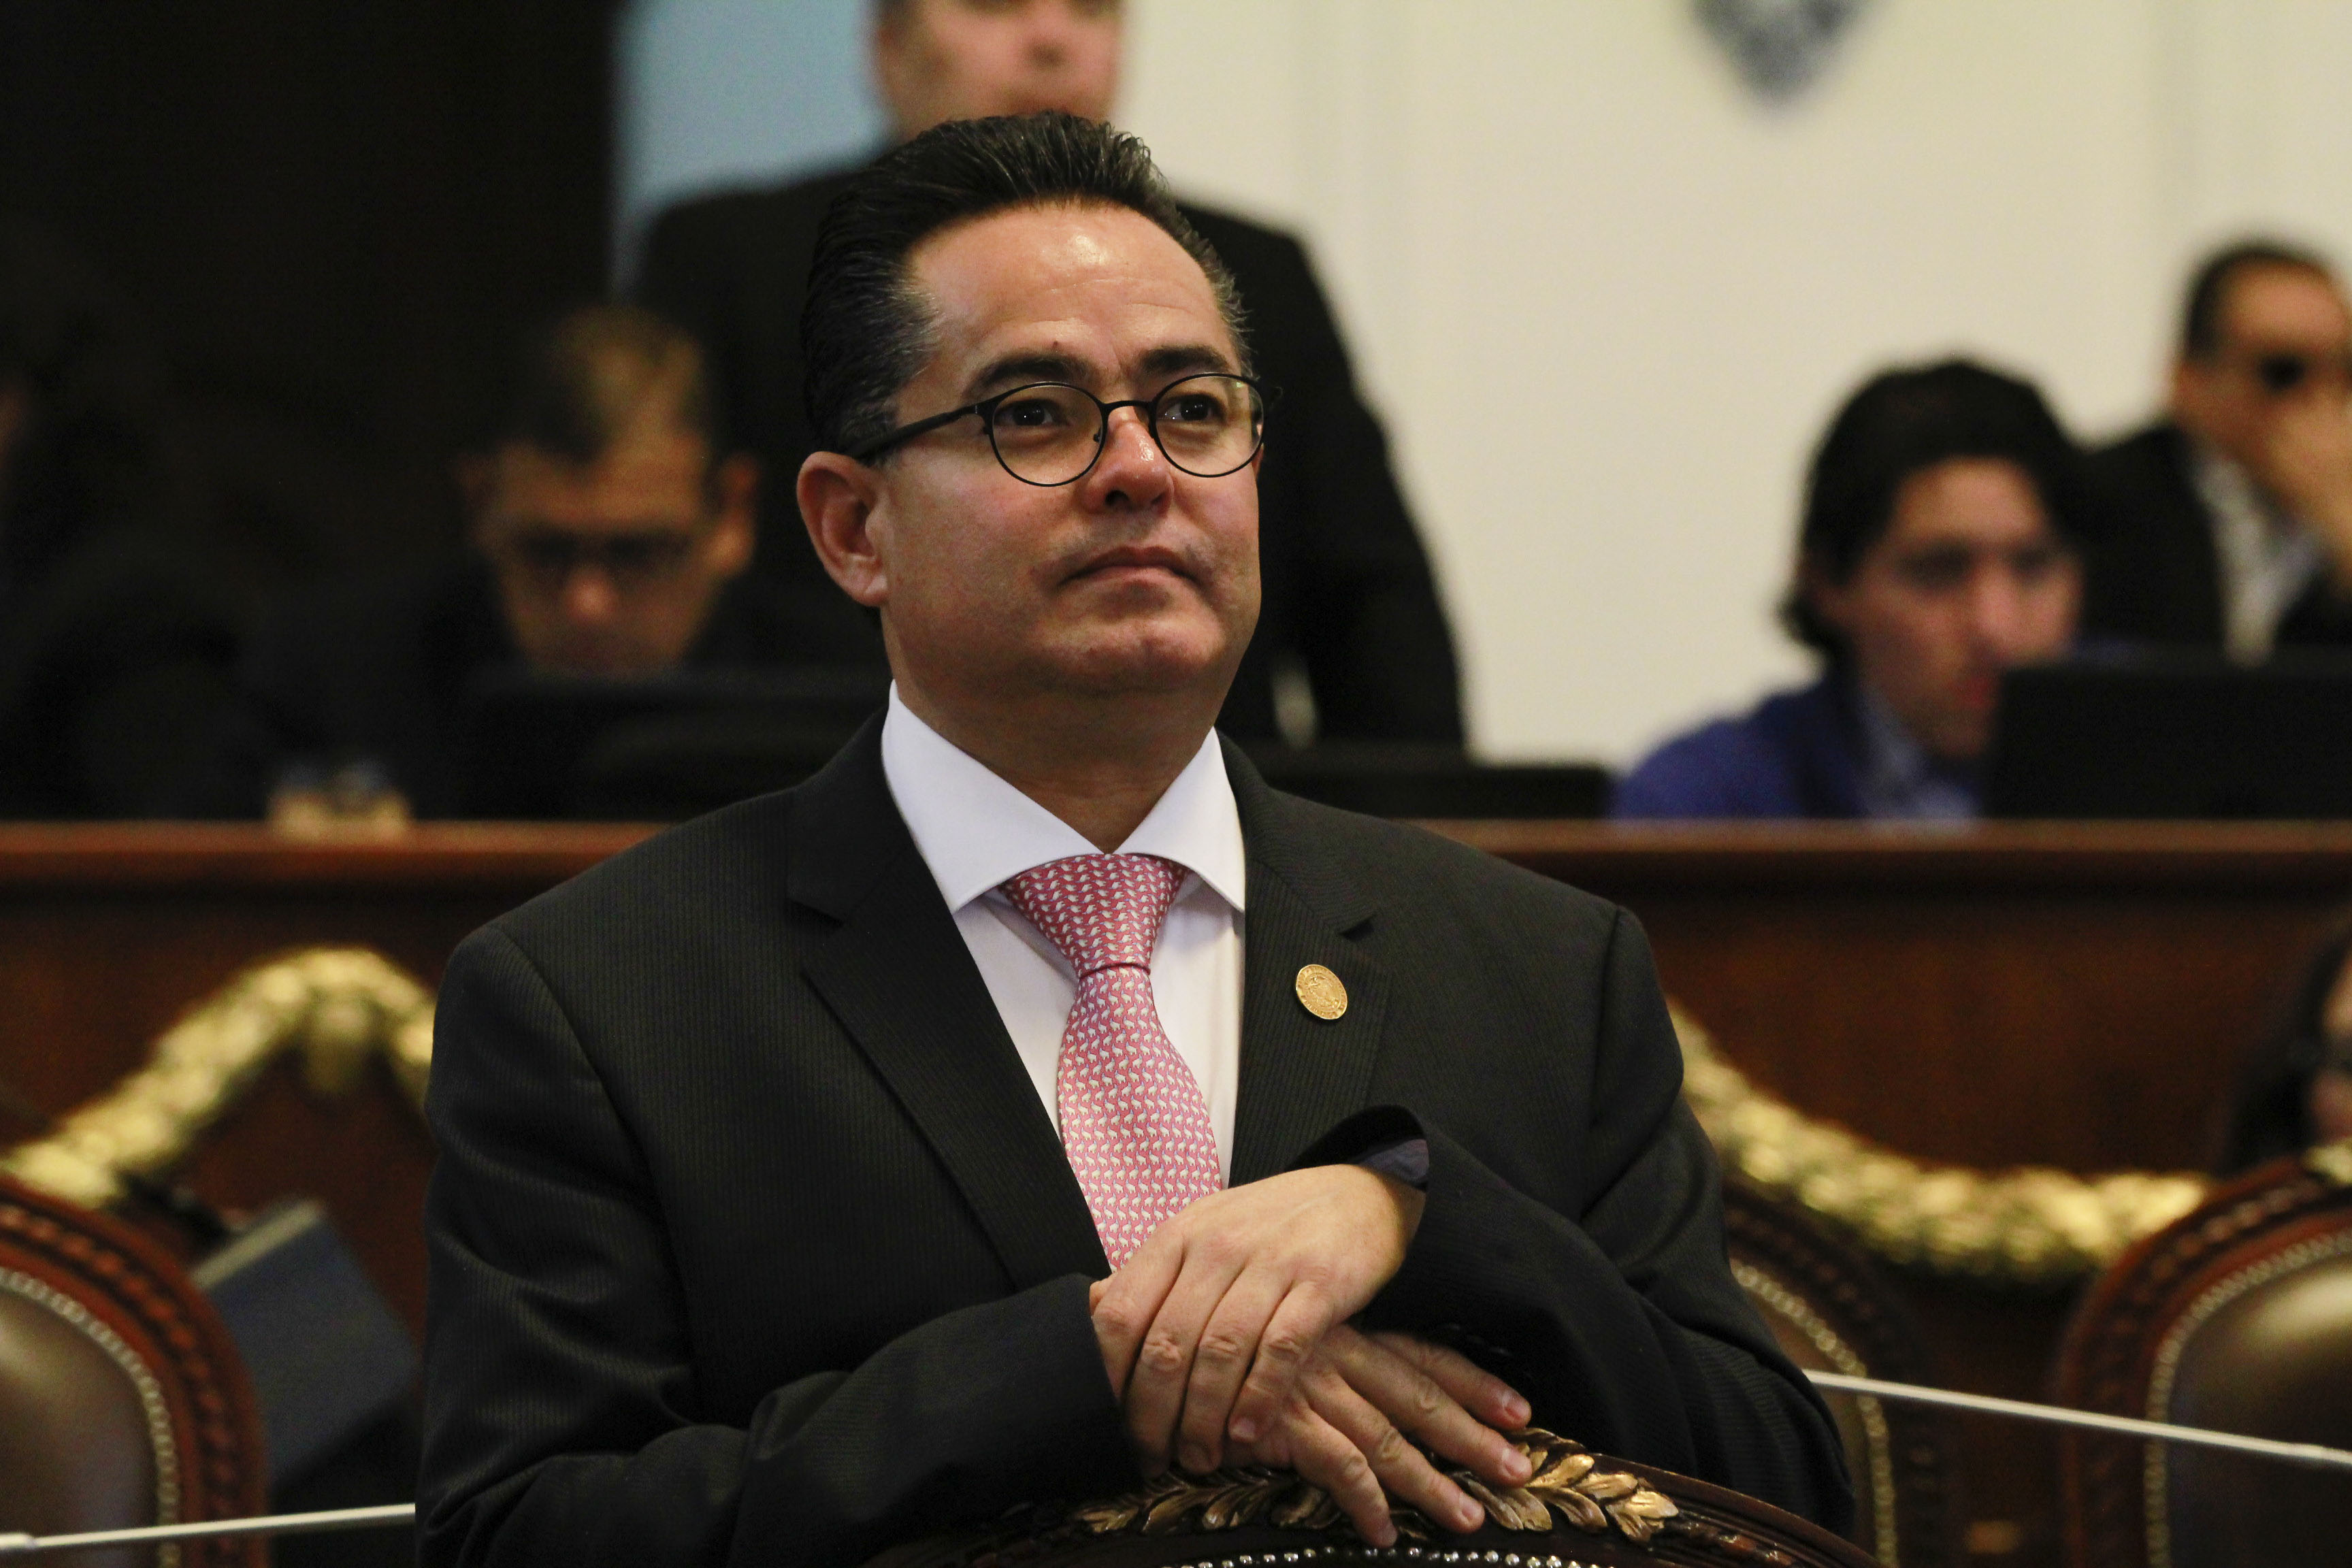 El próximo 2 de agosto comparecerá ante comisiones el jefe delegacional de Tláhuac: Leonel Luna Estrada